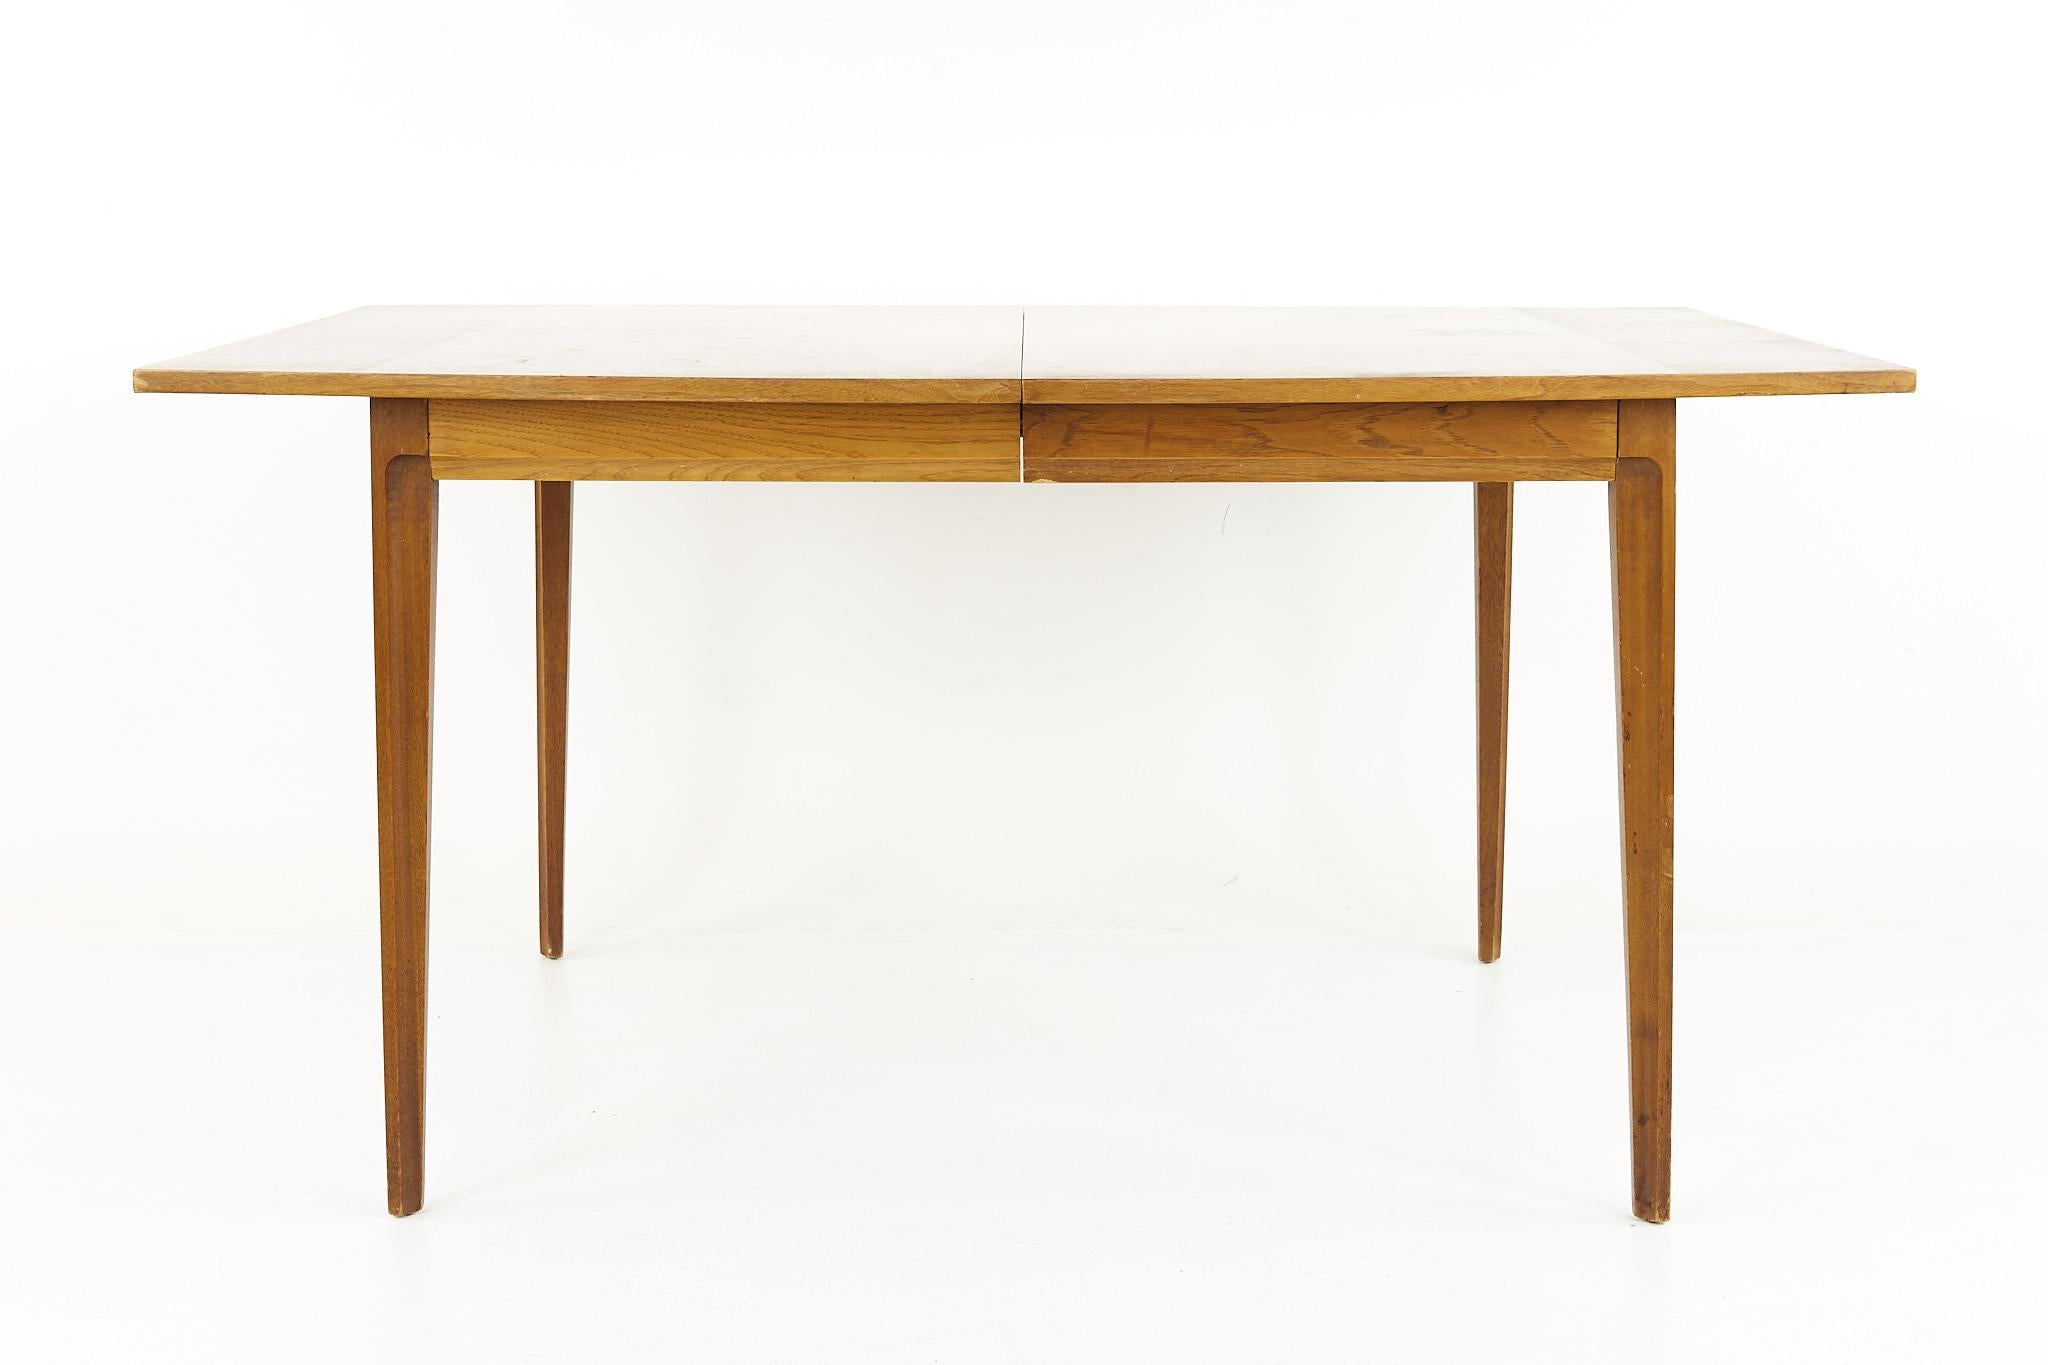 Broyhill vorwärts '70 Mitte Jahrhundert Walnuss Esstisch mit 1 Blatt

Dieser Tisch misst: 60 breit x 40,5 tief x 30 Zoll hoch, mit einem Stuhl Abstand von 29 Zoll, das Blatt misst 12 Zoll breit, so dass eine maximale Tischbreite von 82